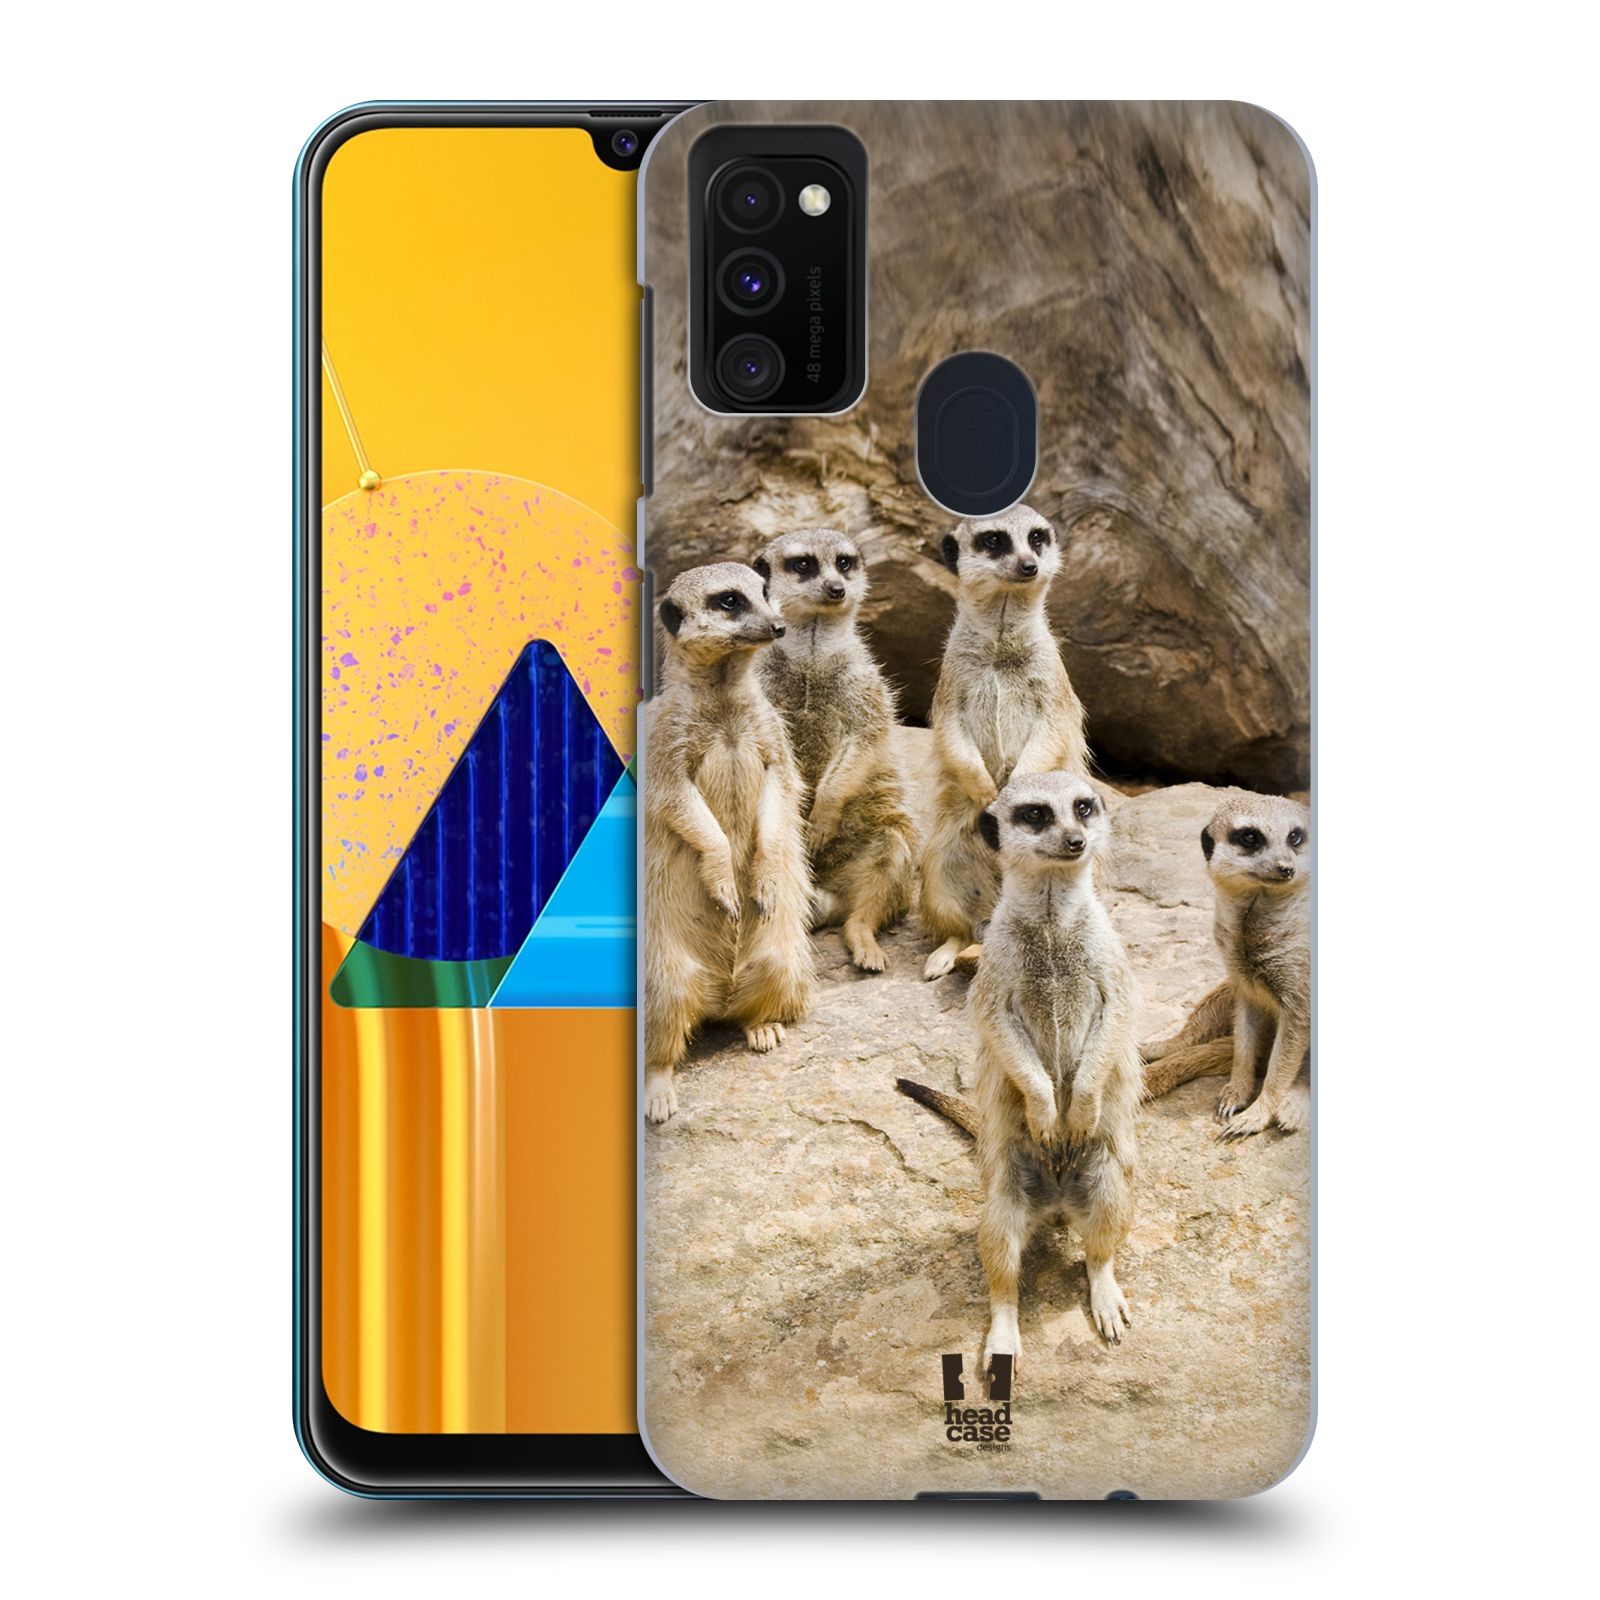 Zadní obal pro mobil Samsung Galaxy M21 - HEAD CASE - Svět zvířat roztomilé surikaty